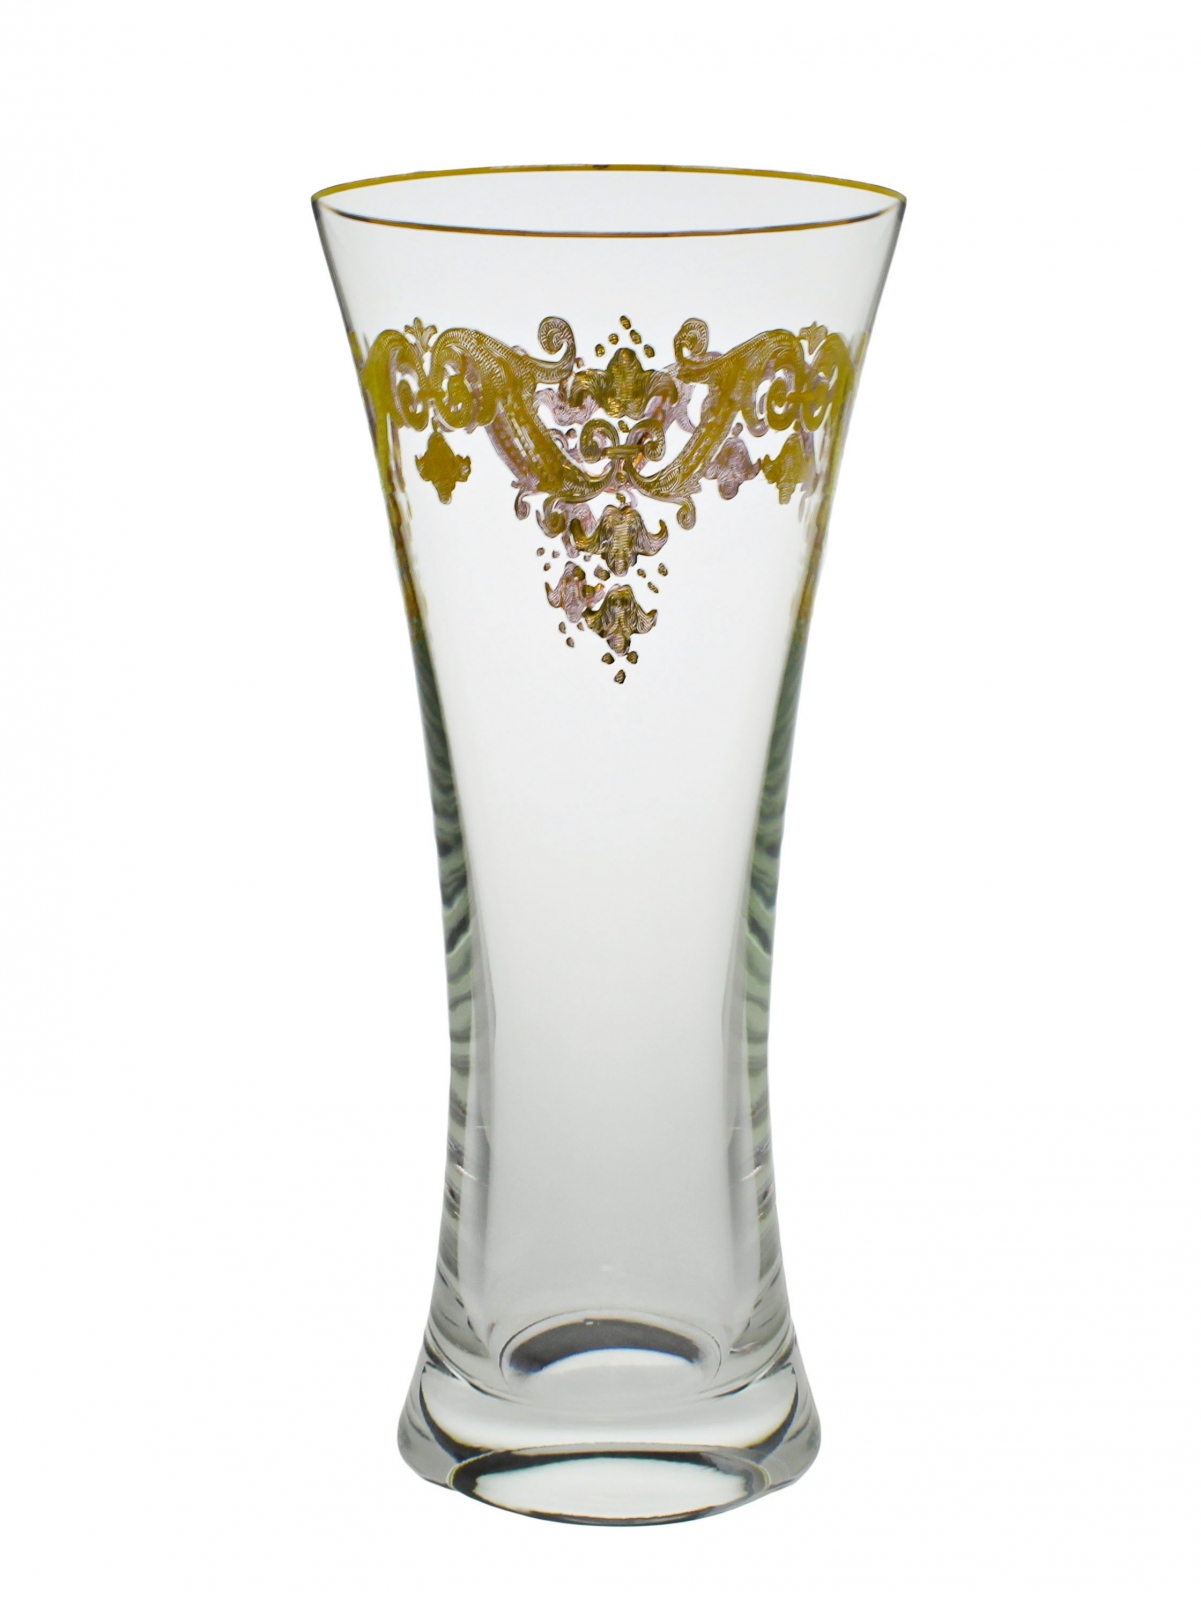 Centerpiece Vase with 24K Gold Artwork